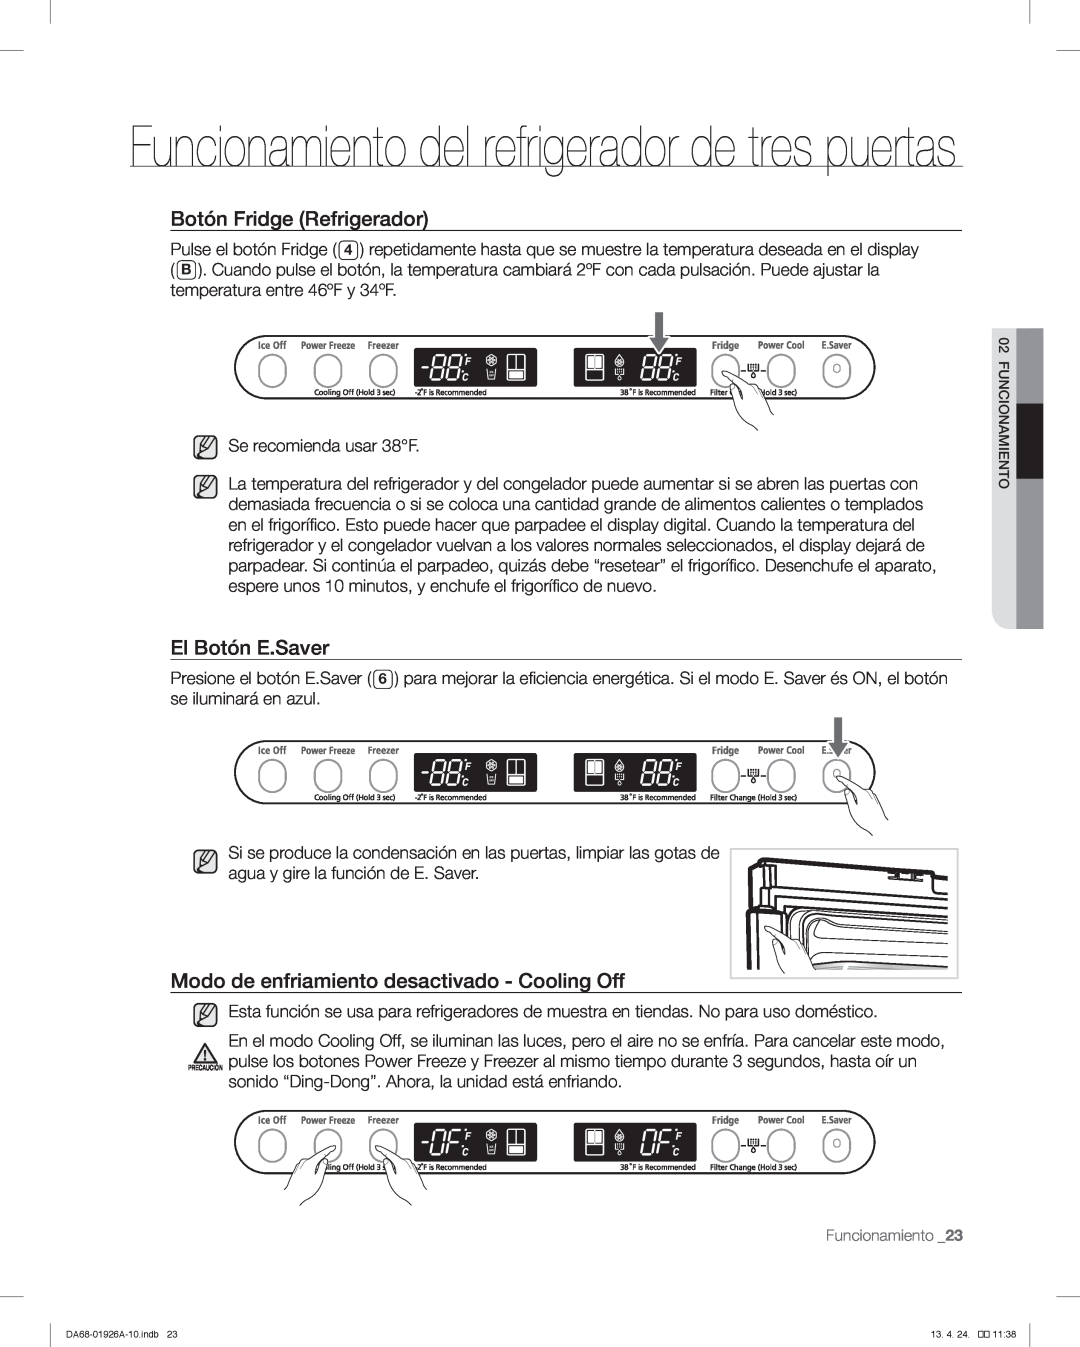 Samsung RFG293HAWP user manual Funcionamiento del refrigerador de tres puertas, Botón Fridge Refrigerador, El Botón E.Saver 